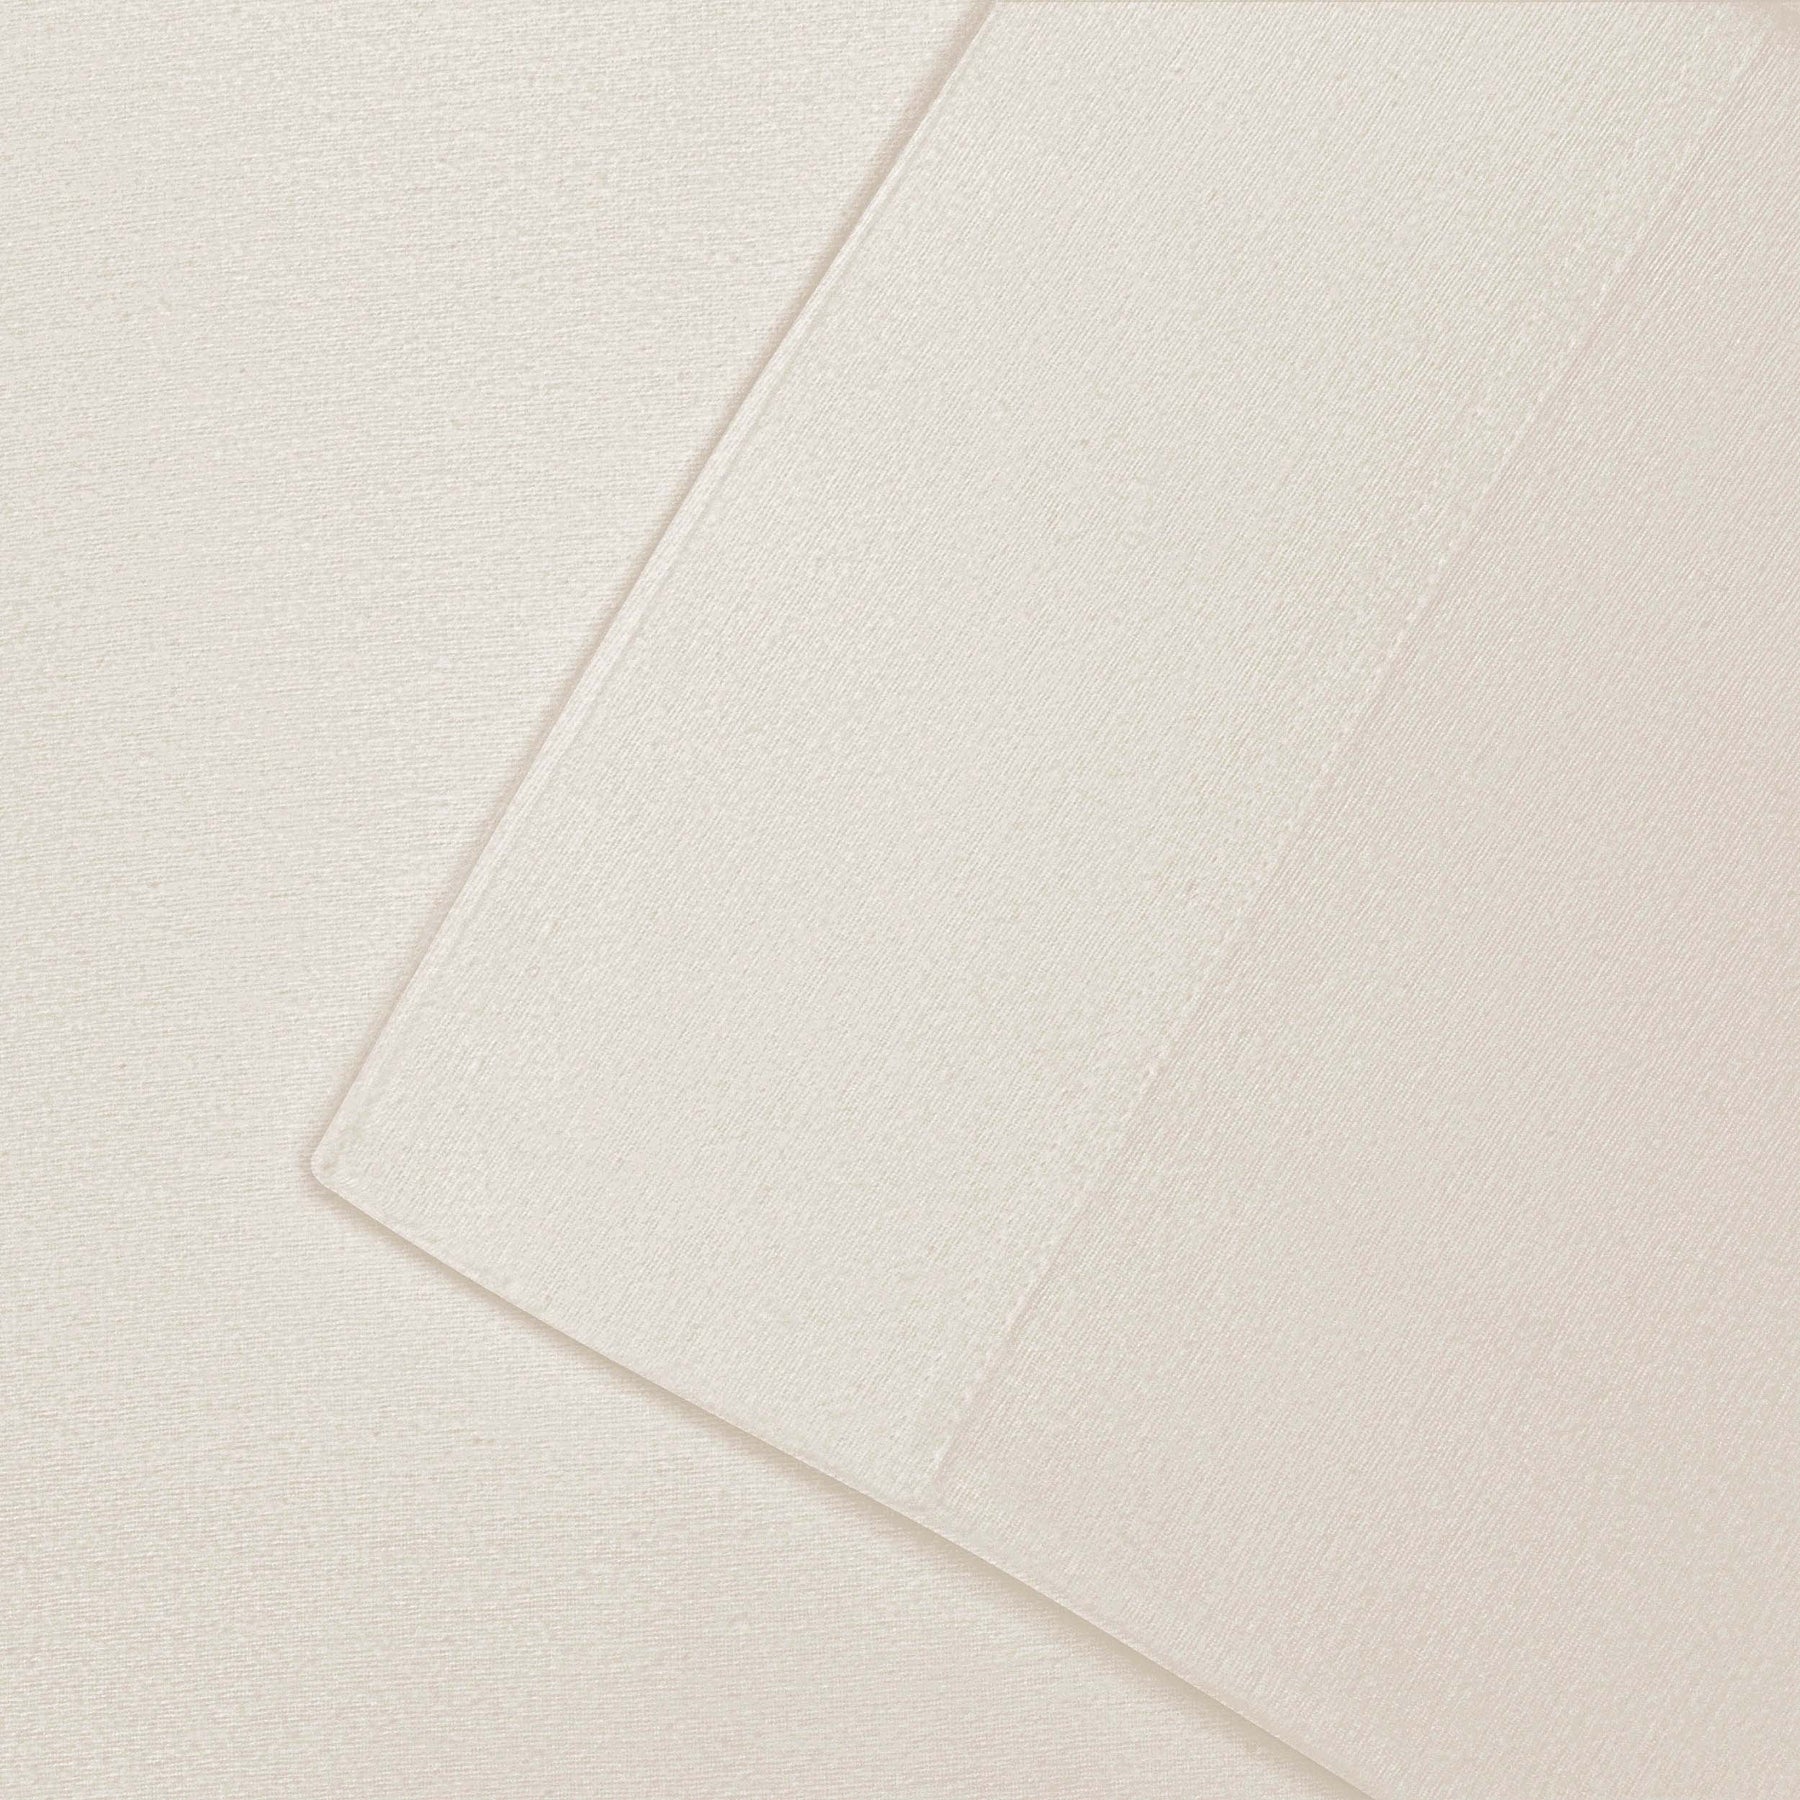 Cotton Flannel 2 Piece Pillowcase Set - Ivory